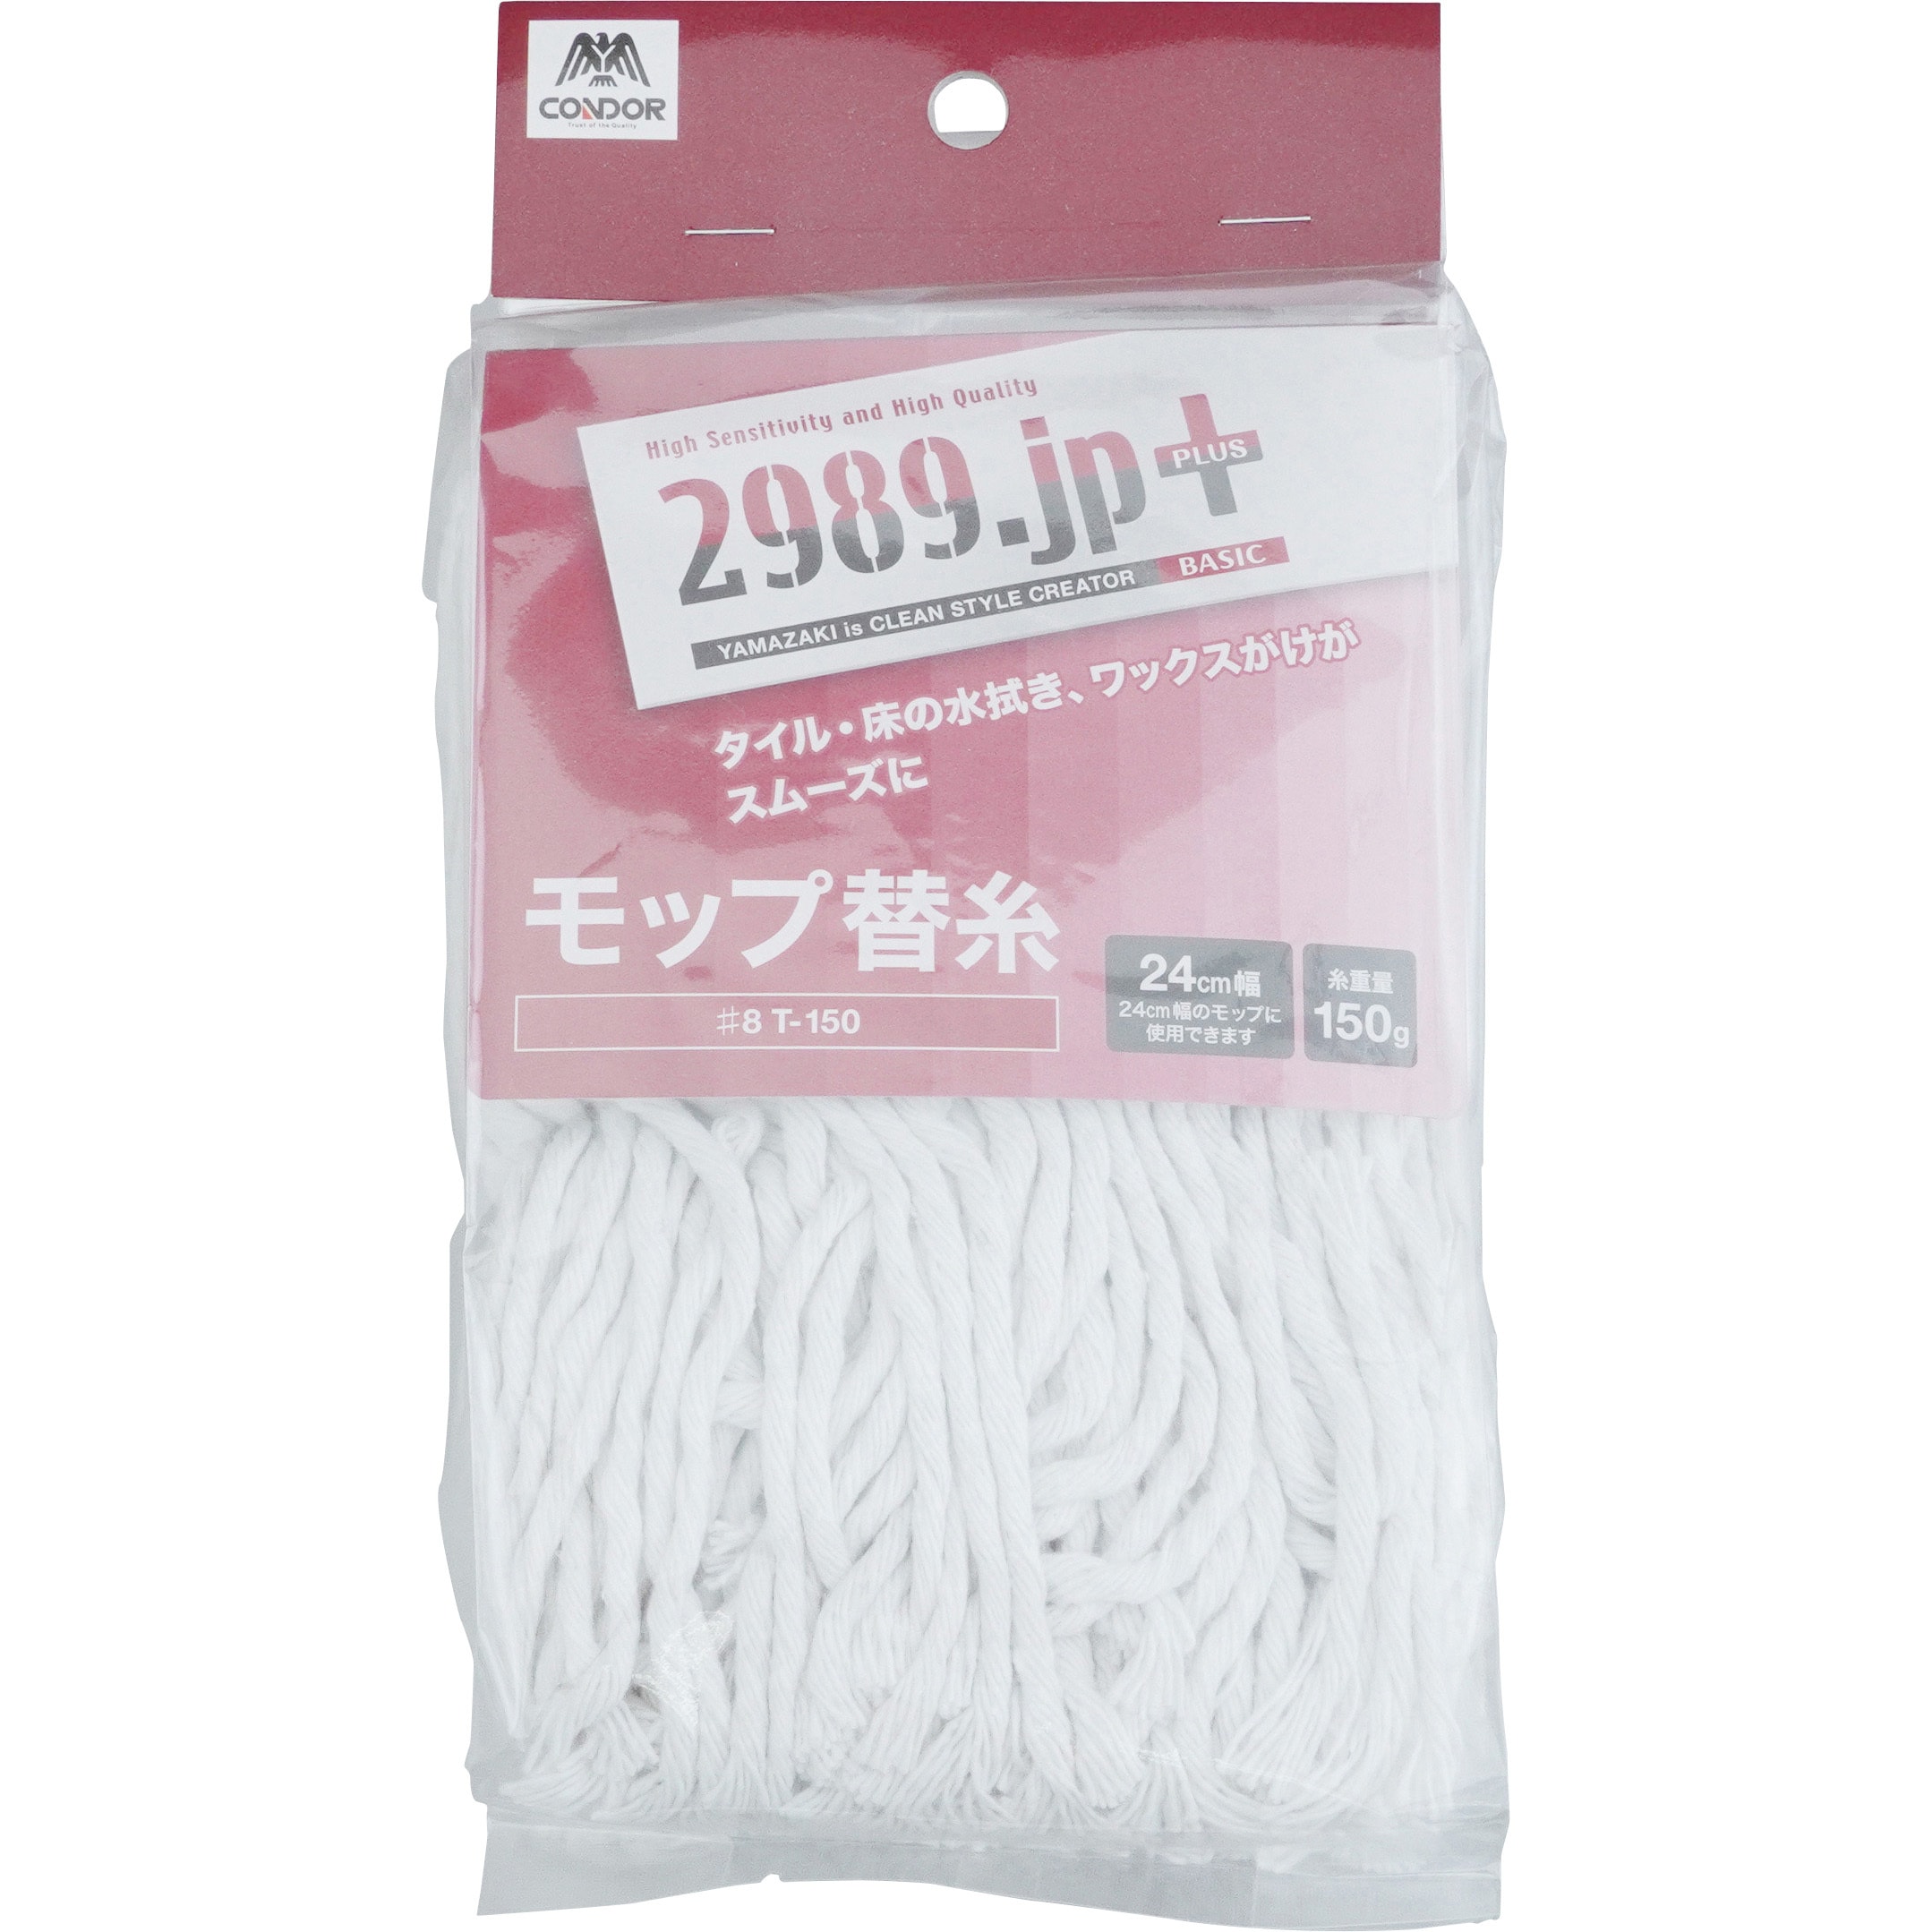 山崎産業 2989.jP モップ 替糸 8 - モップ